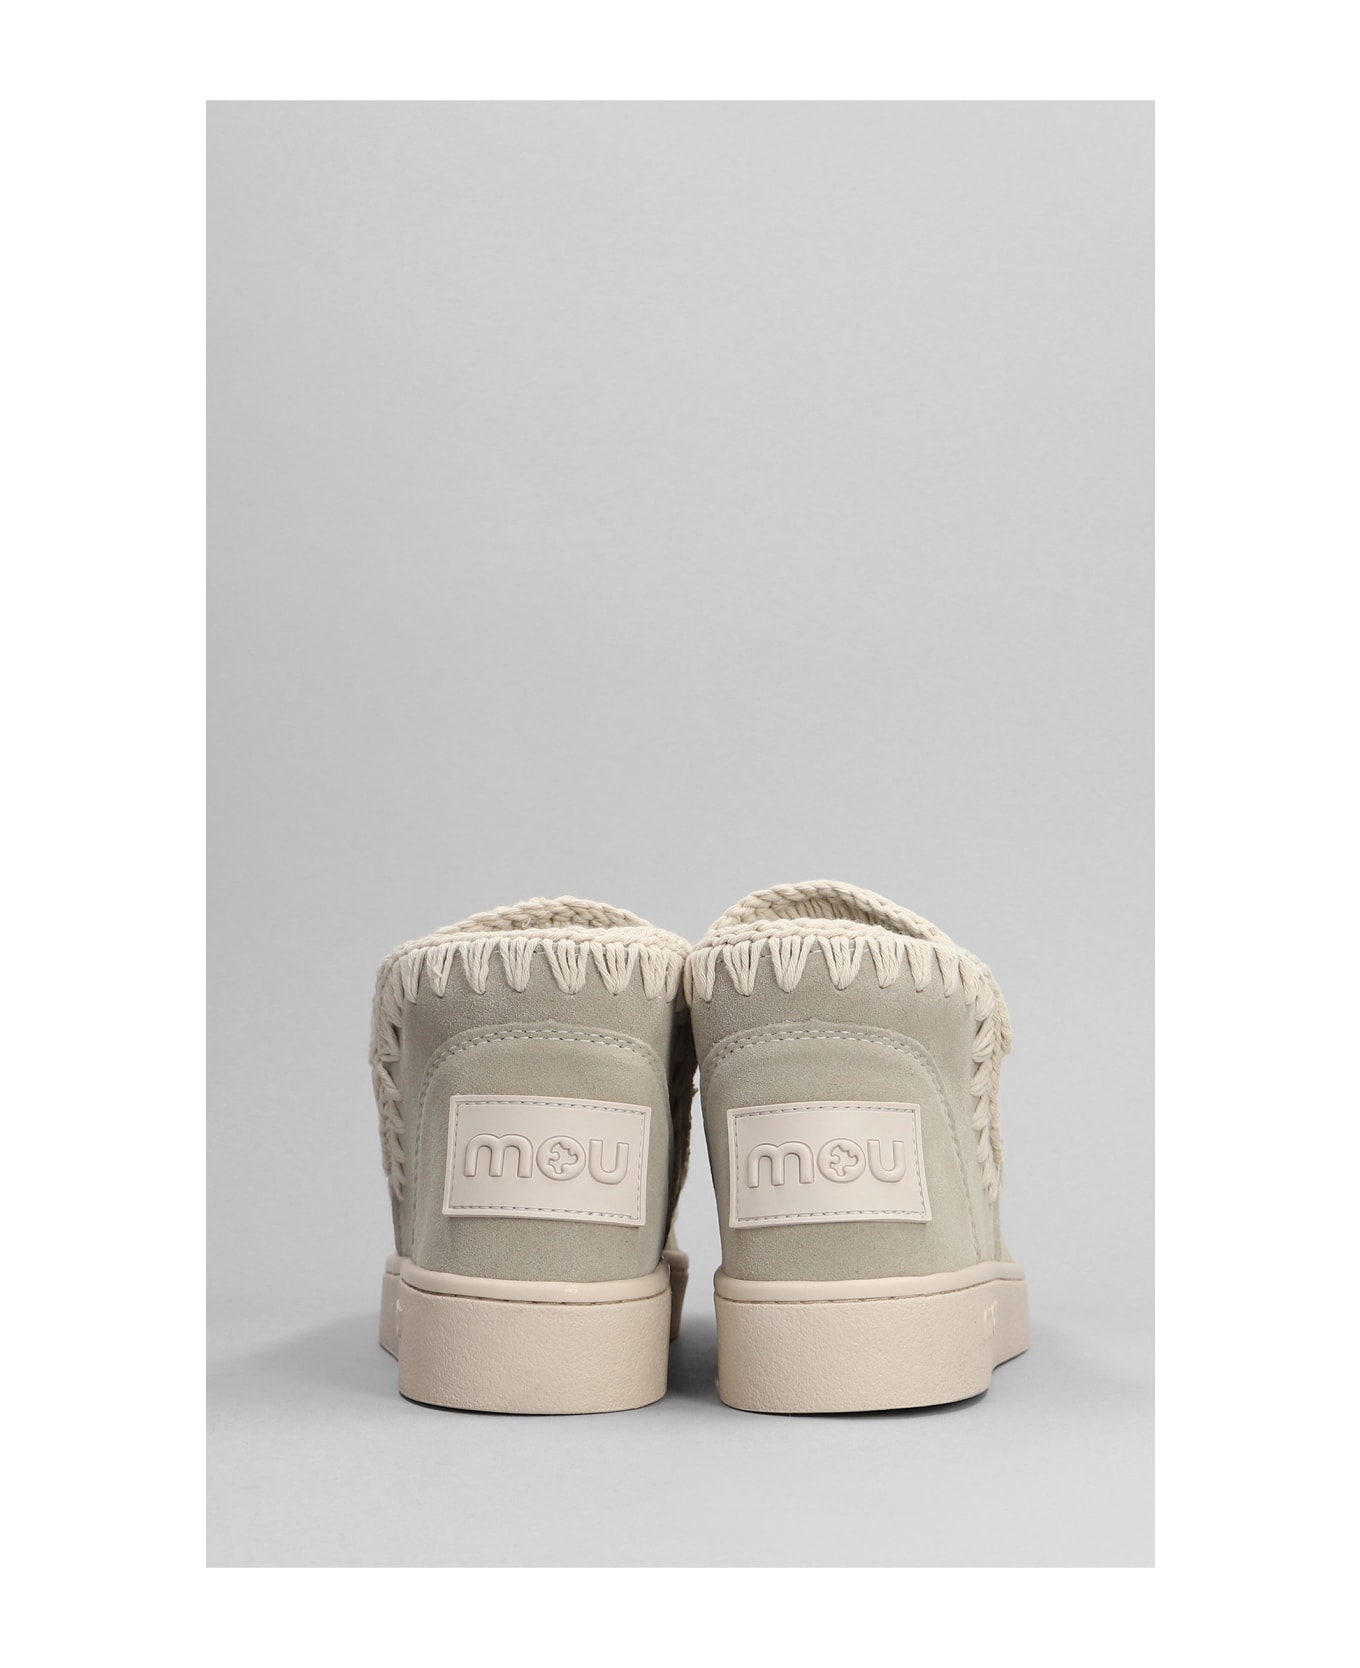 Mou Sneaker Monochrome Low Heels Ankle Boots In Beige Suede - beige